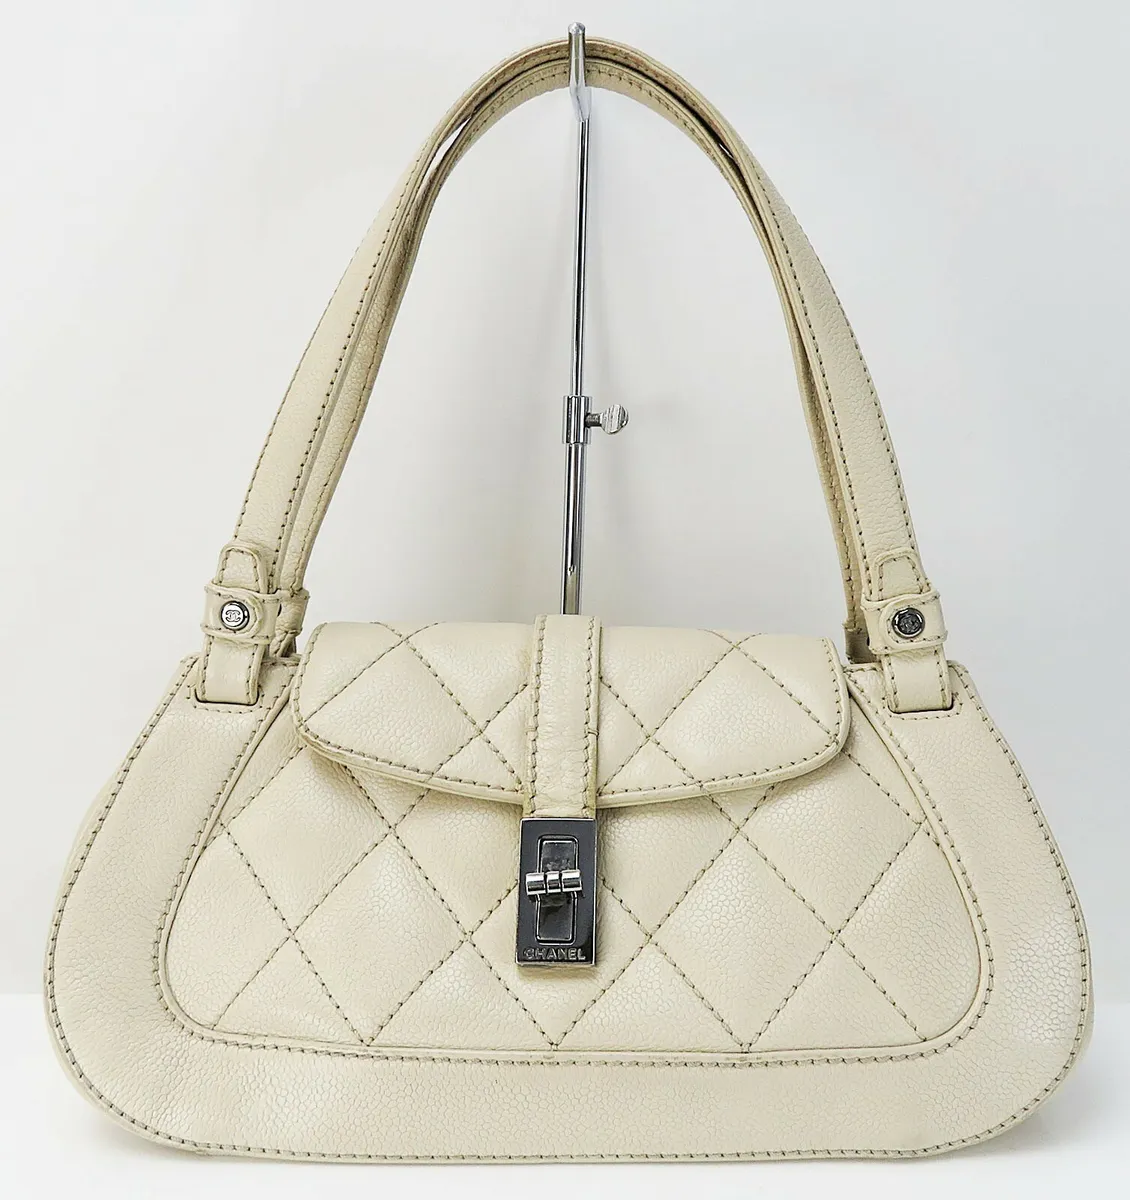 Authentic CHANEL Beige Caviar Leather CC Hand Shoulder Bag Purse #43806